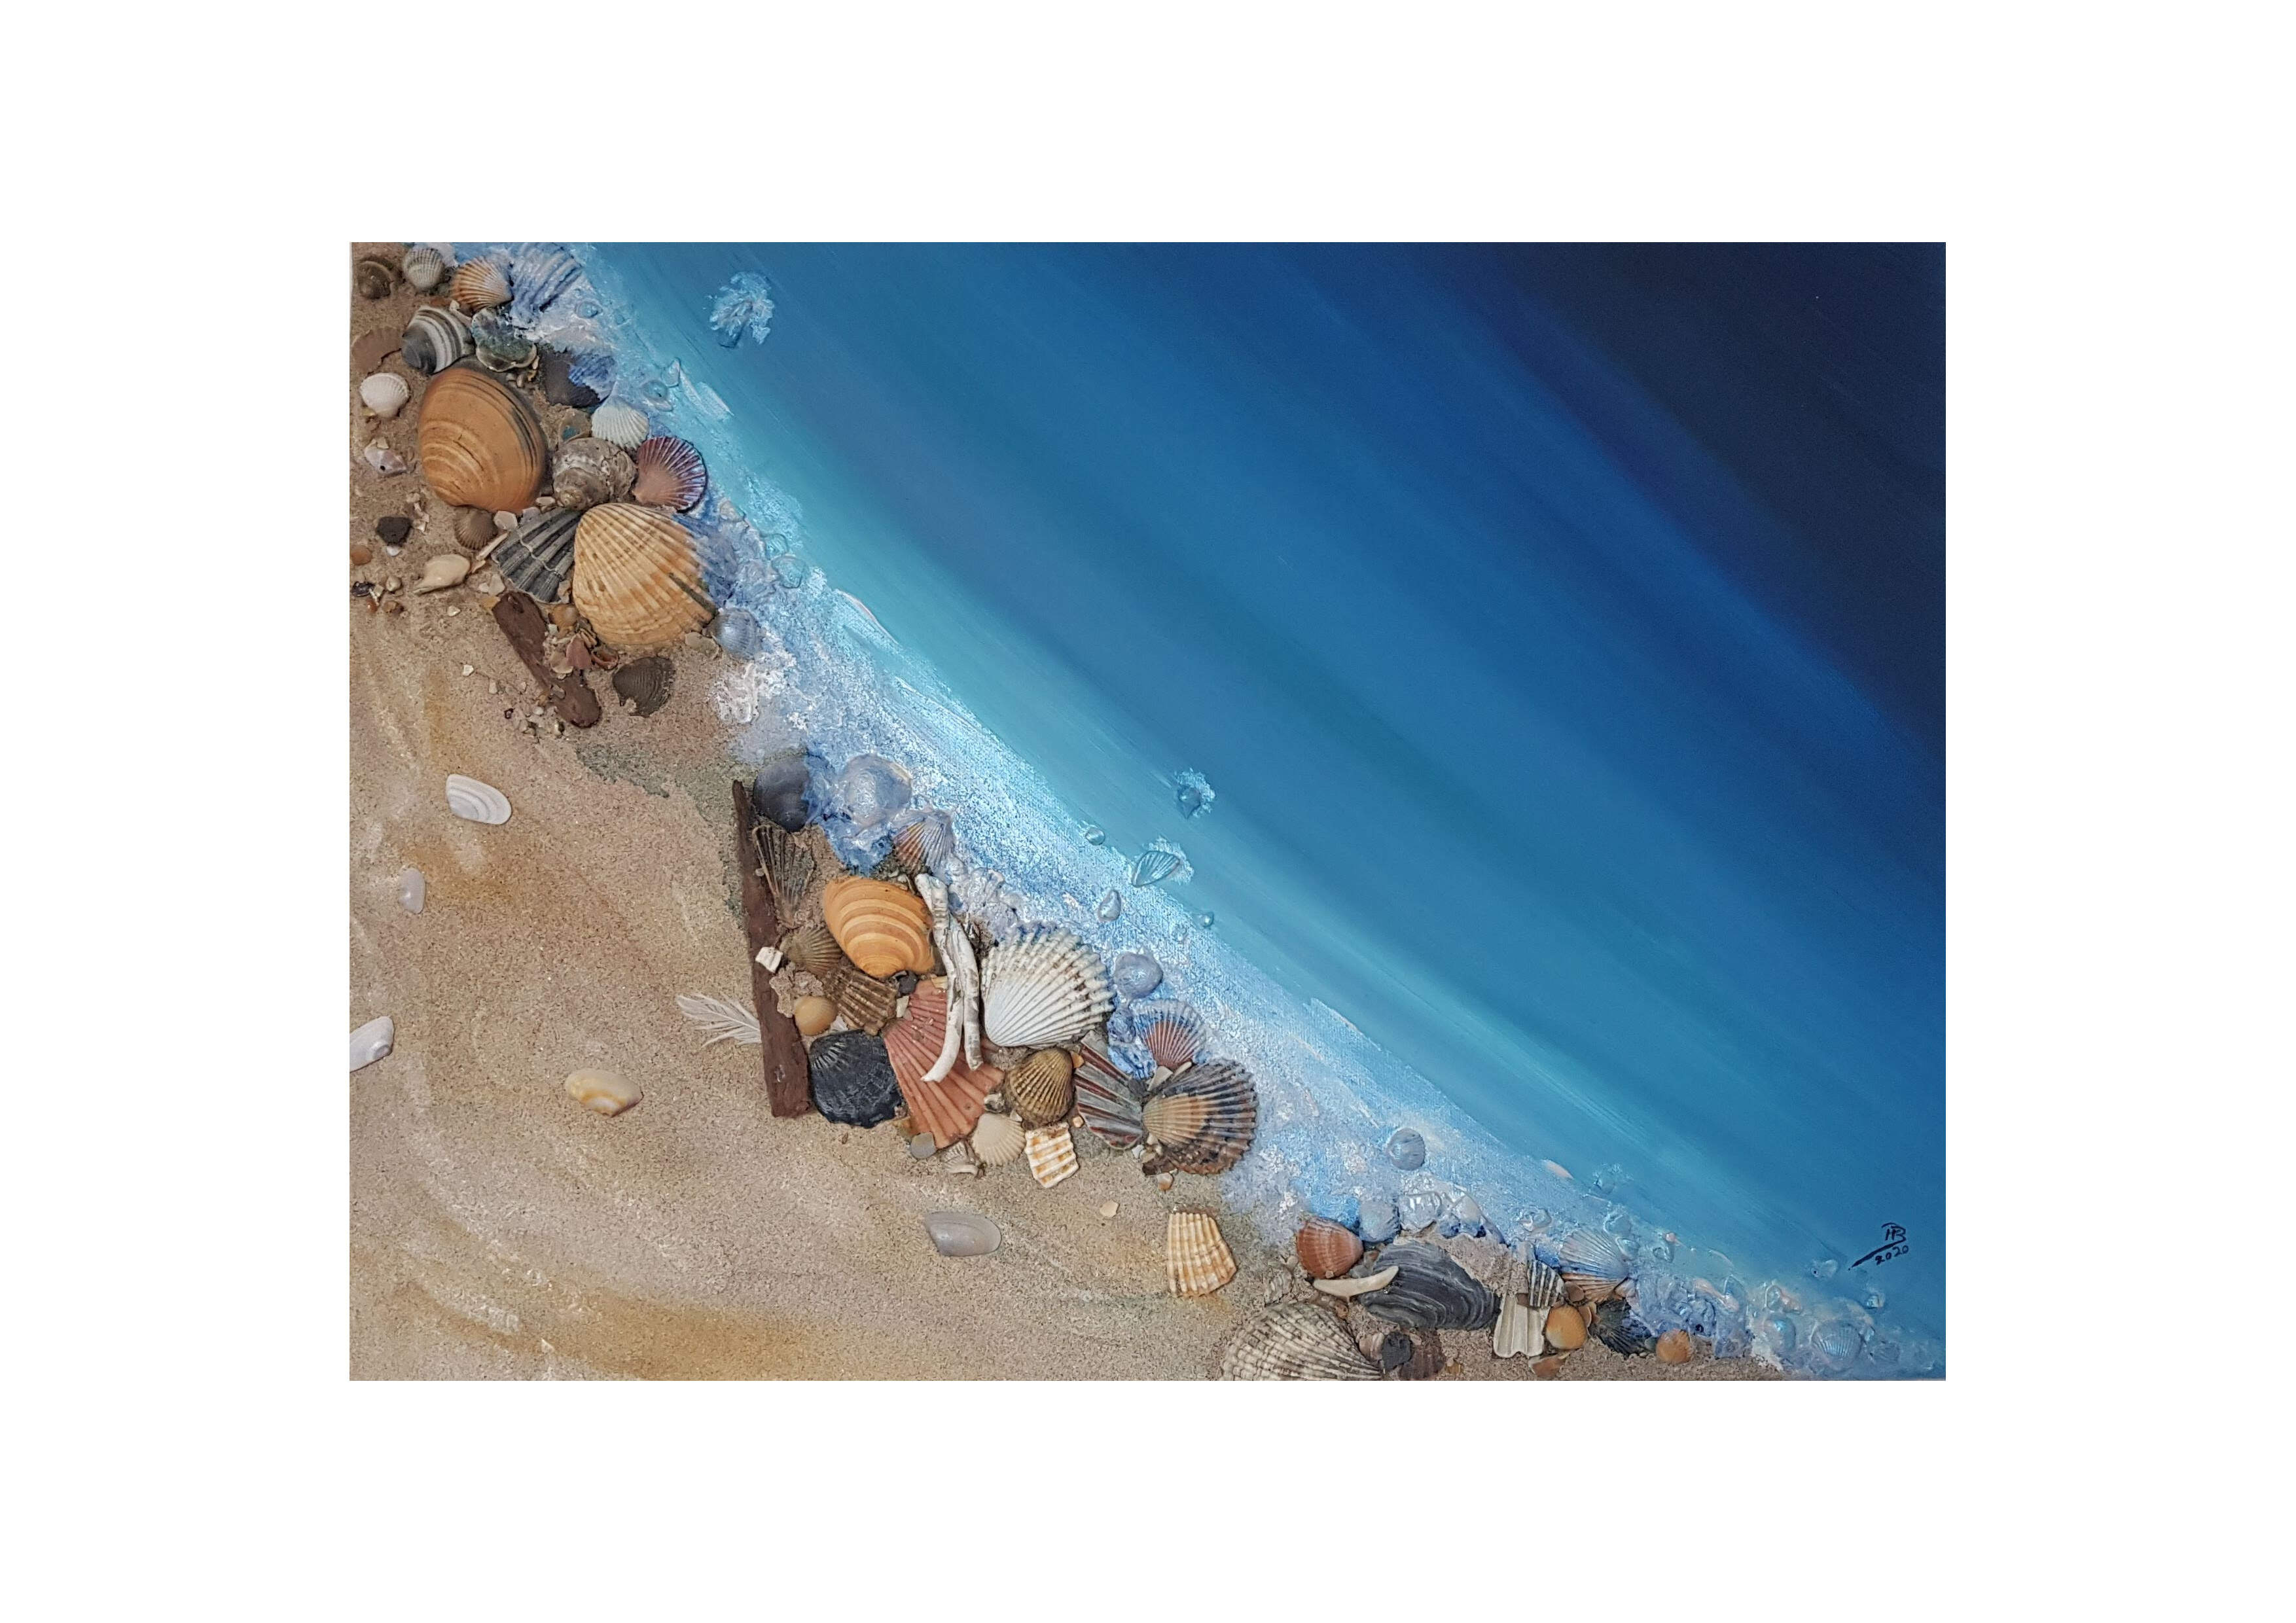 7ox5o cm, Acryl mit Strandgut und Sand auf Leinwand, CHF 28o.oo